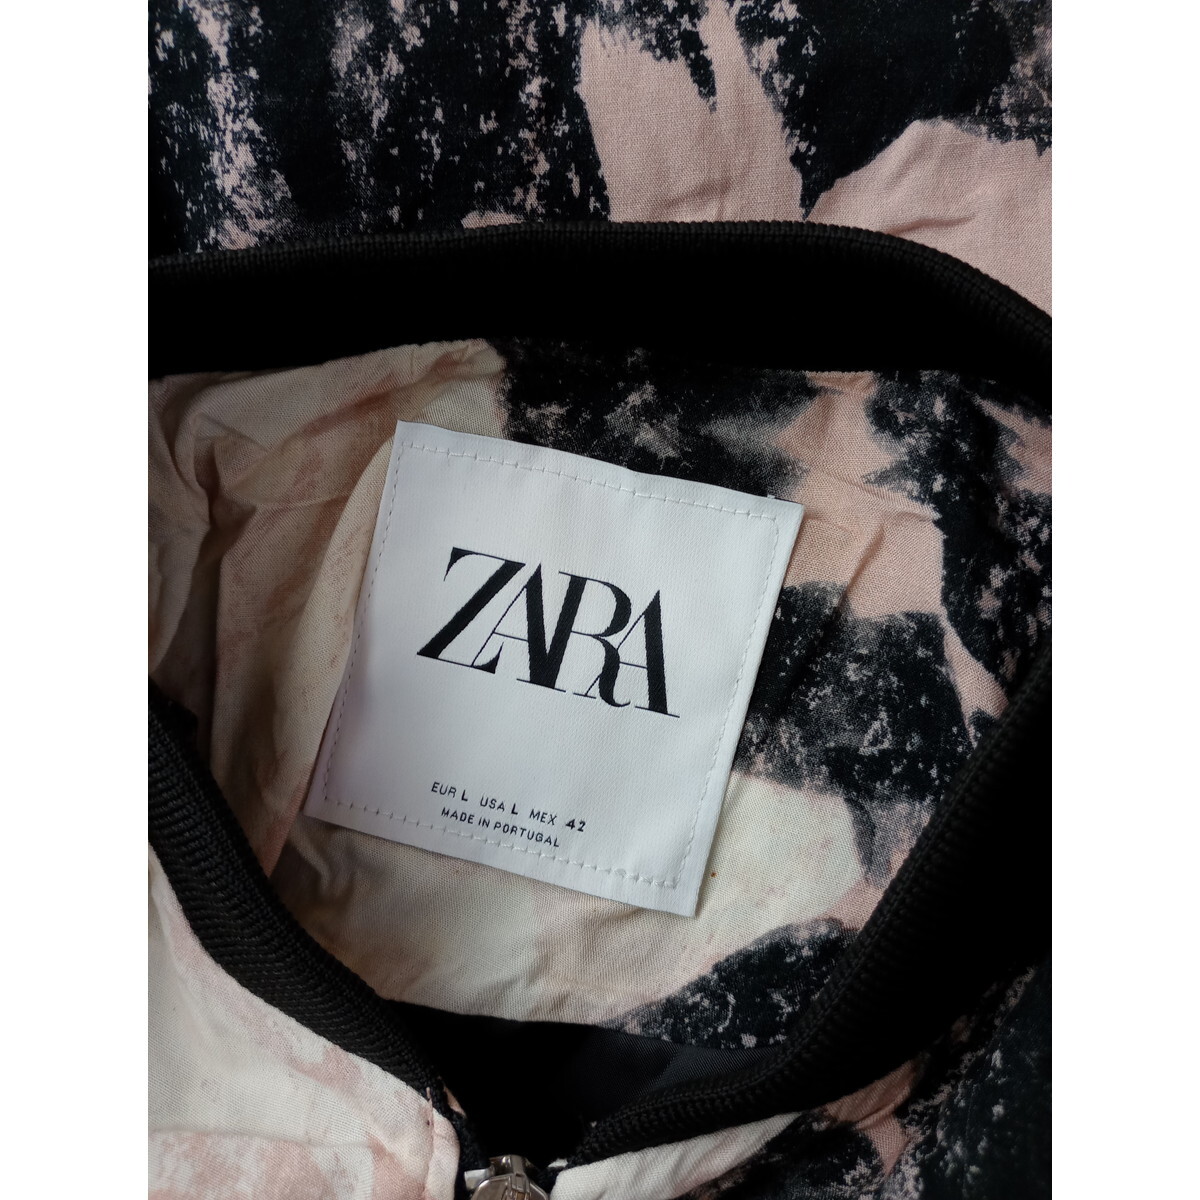 ZARA ザラ「柄投入で生活にたのしさをプラスする」柄 ブルゾン ジャケット L 黒 ブラック ピンク (31Y+7452)_画像4